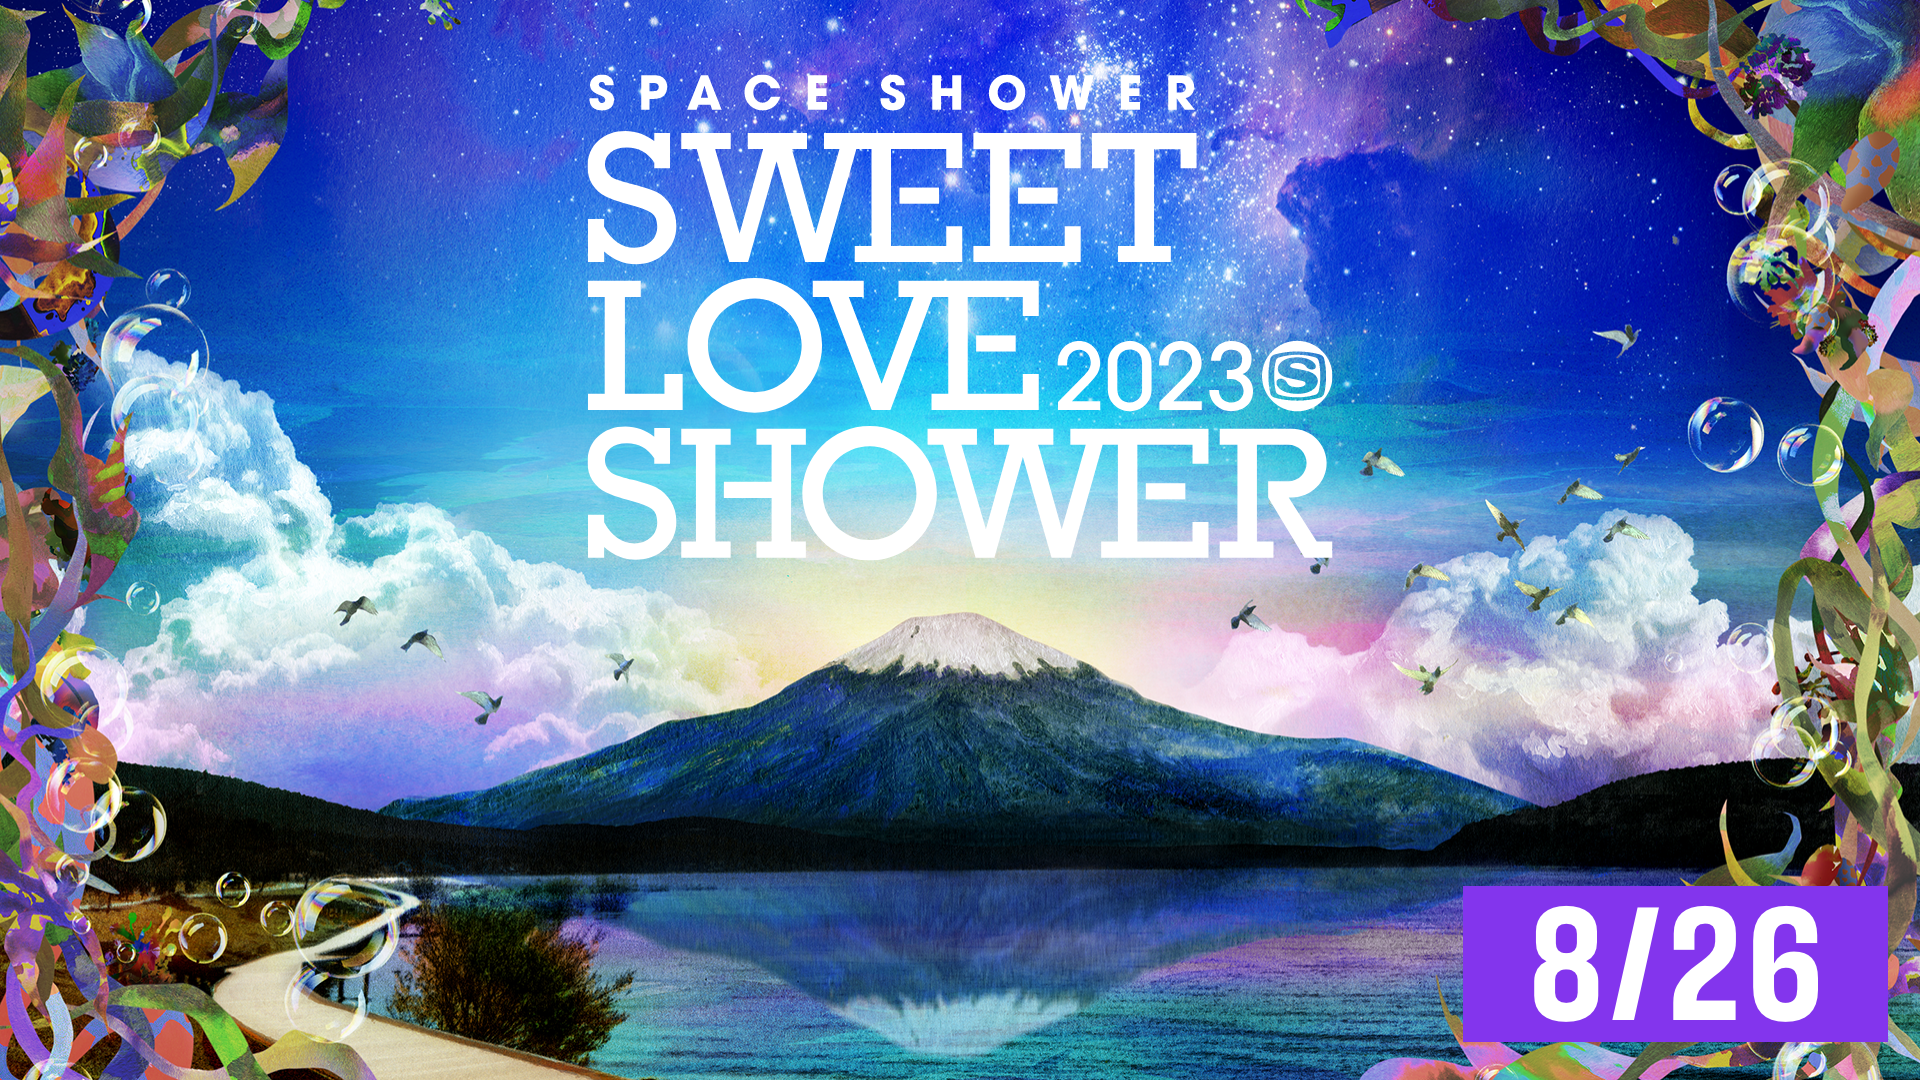 エリア関東SPACE SHOWER SWEET LOVE SHOWER 2023 2枚分